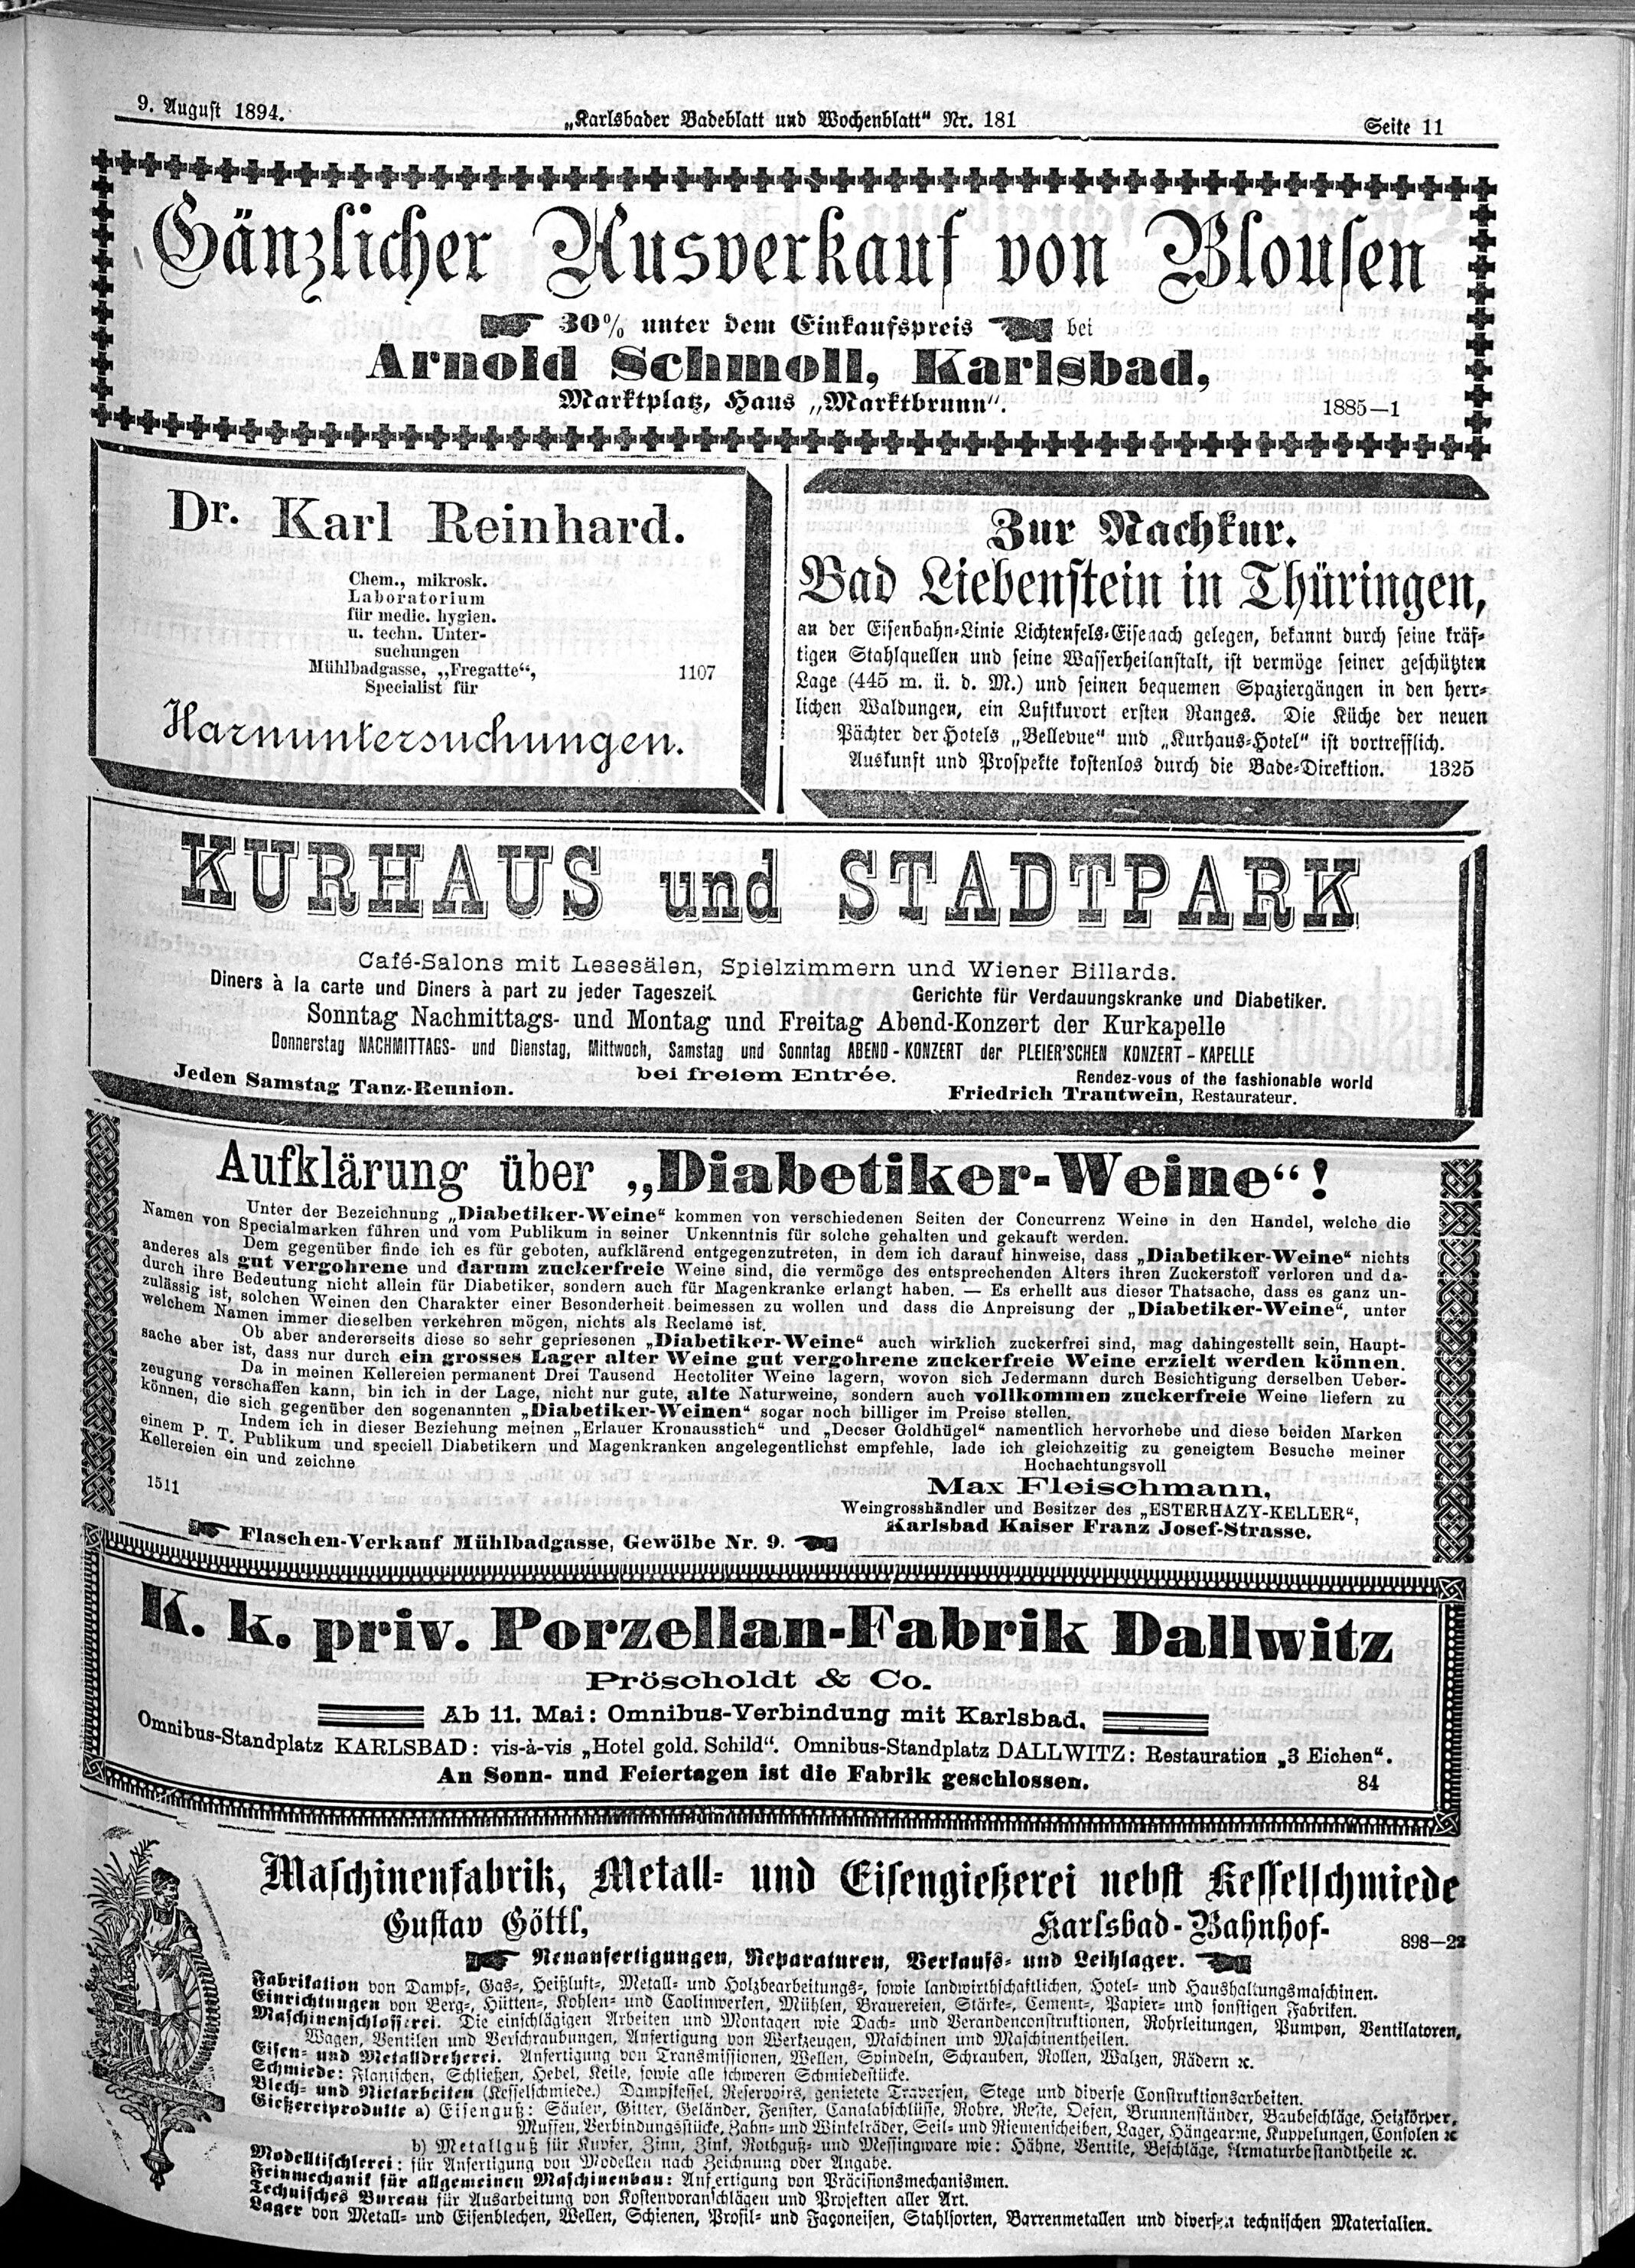 9. karlsbader-badeblatt-1894-08-09-n181_1585